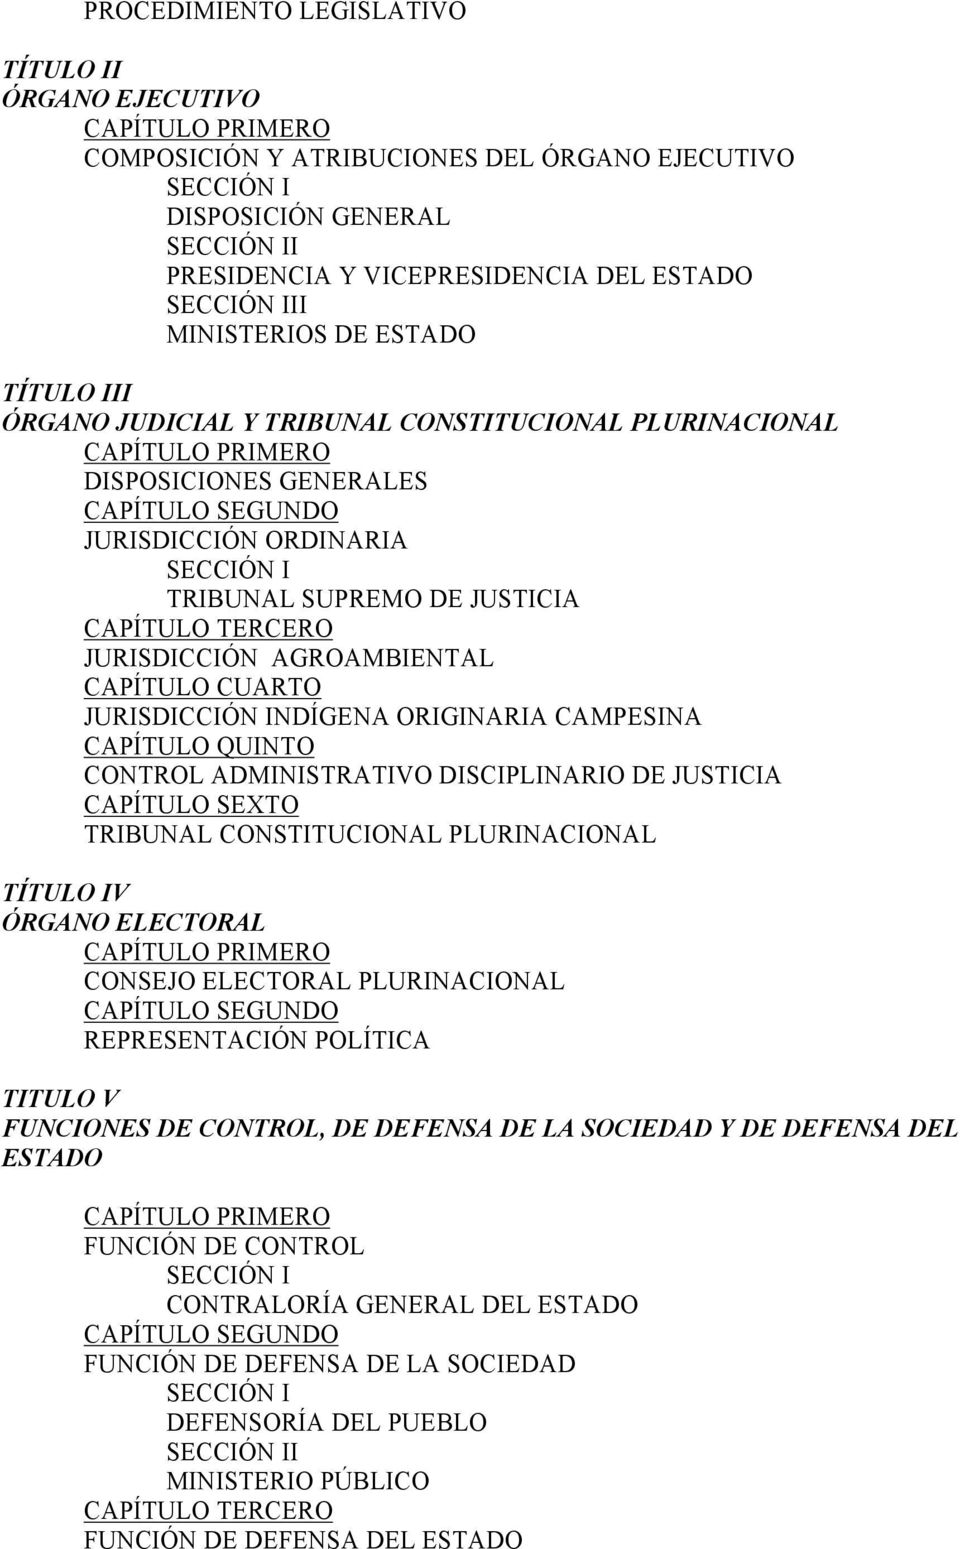 TRIBUNAL SUPREMO DE JUSTICIA CAPÍTULO TERCERO JURISDICCIÓN AGROAMBIENTAL CAPÍTULO CUARTO JURISDICCIÓN INDÍGENA ORIGINARIA CAMPESINA CAPÍTULO QUINTO CONTROL ADMINISTRATIVO DISCIPLINARIO DE JUSTICIA